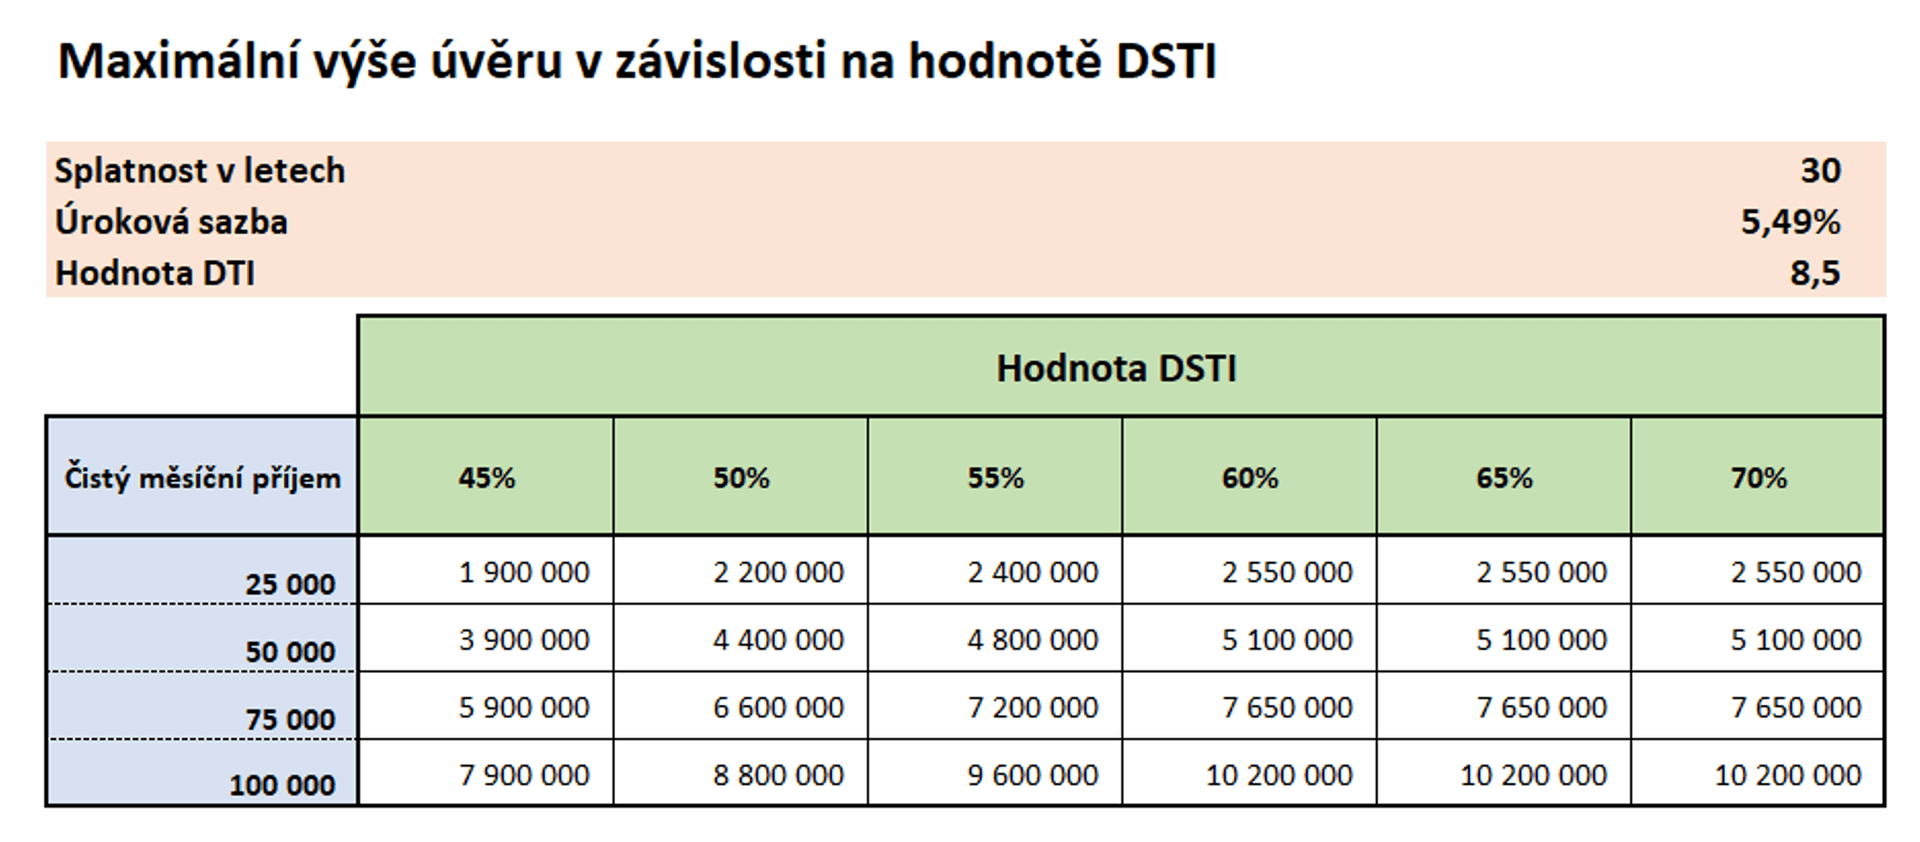 Maximální výše úvěrů v závislosti na hodnotě DSTI